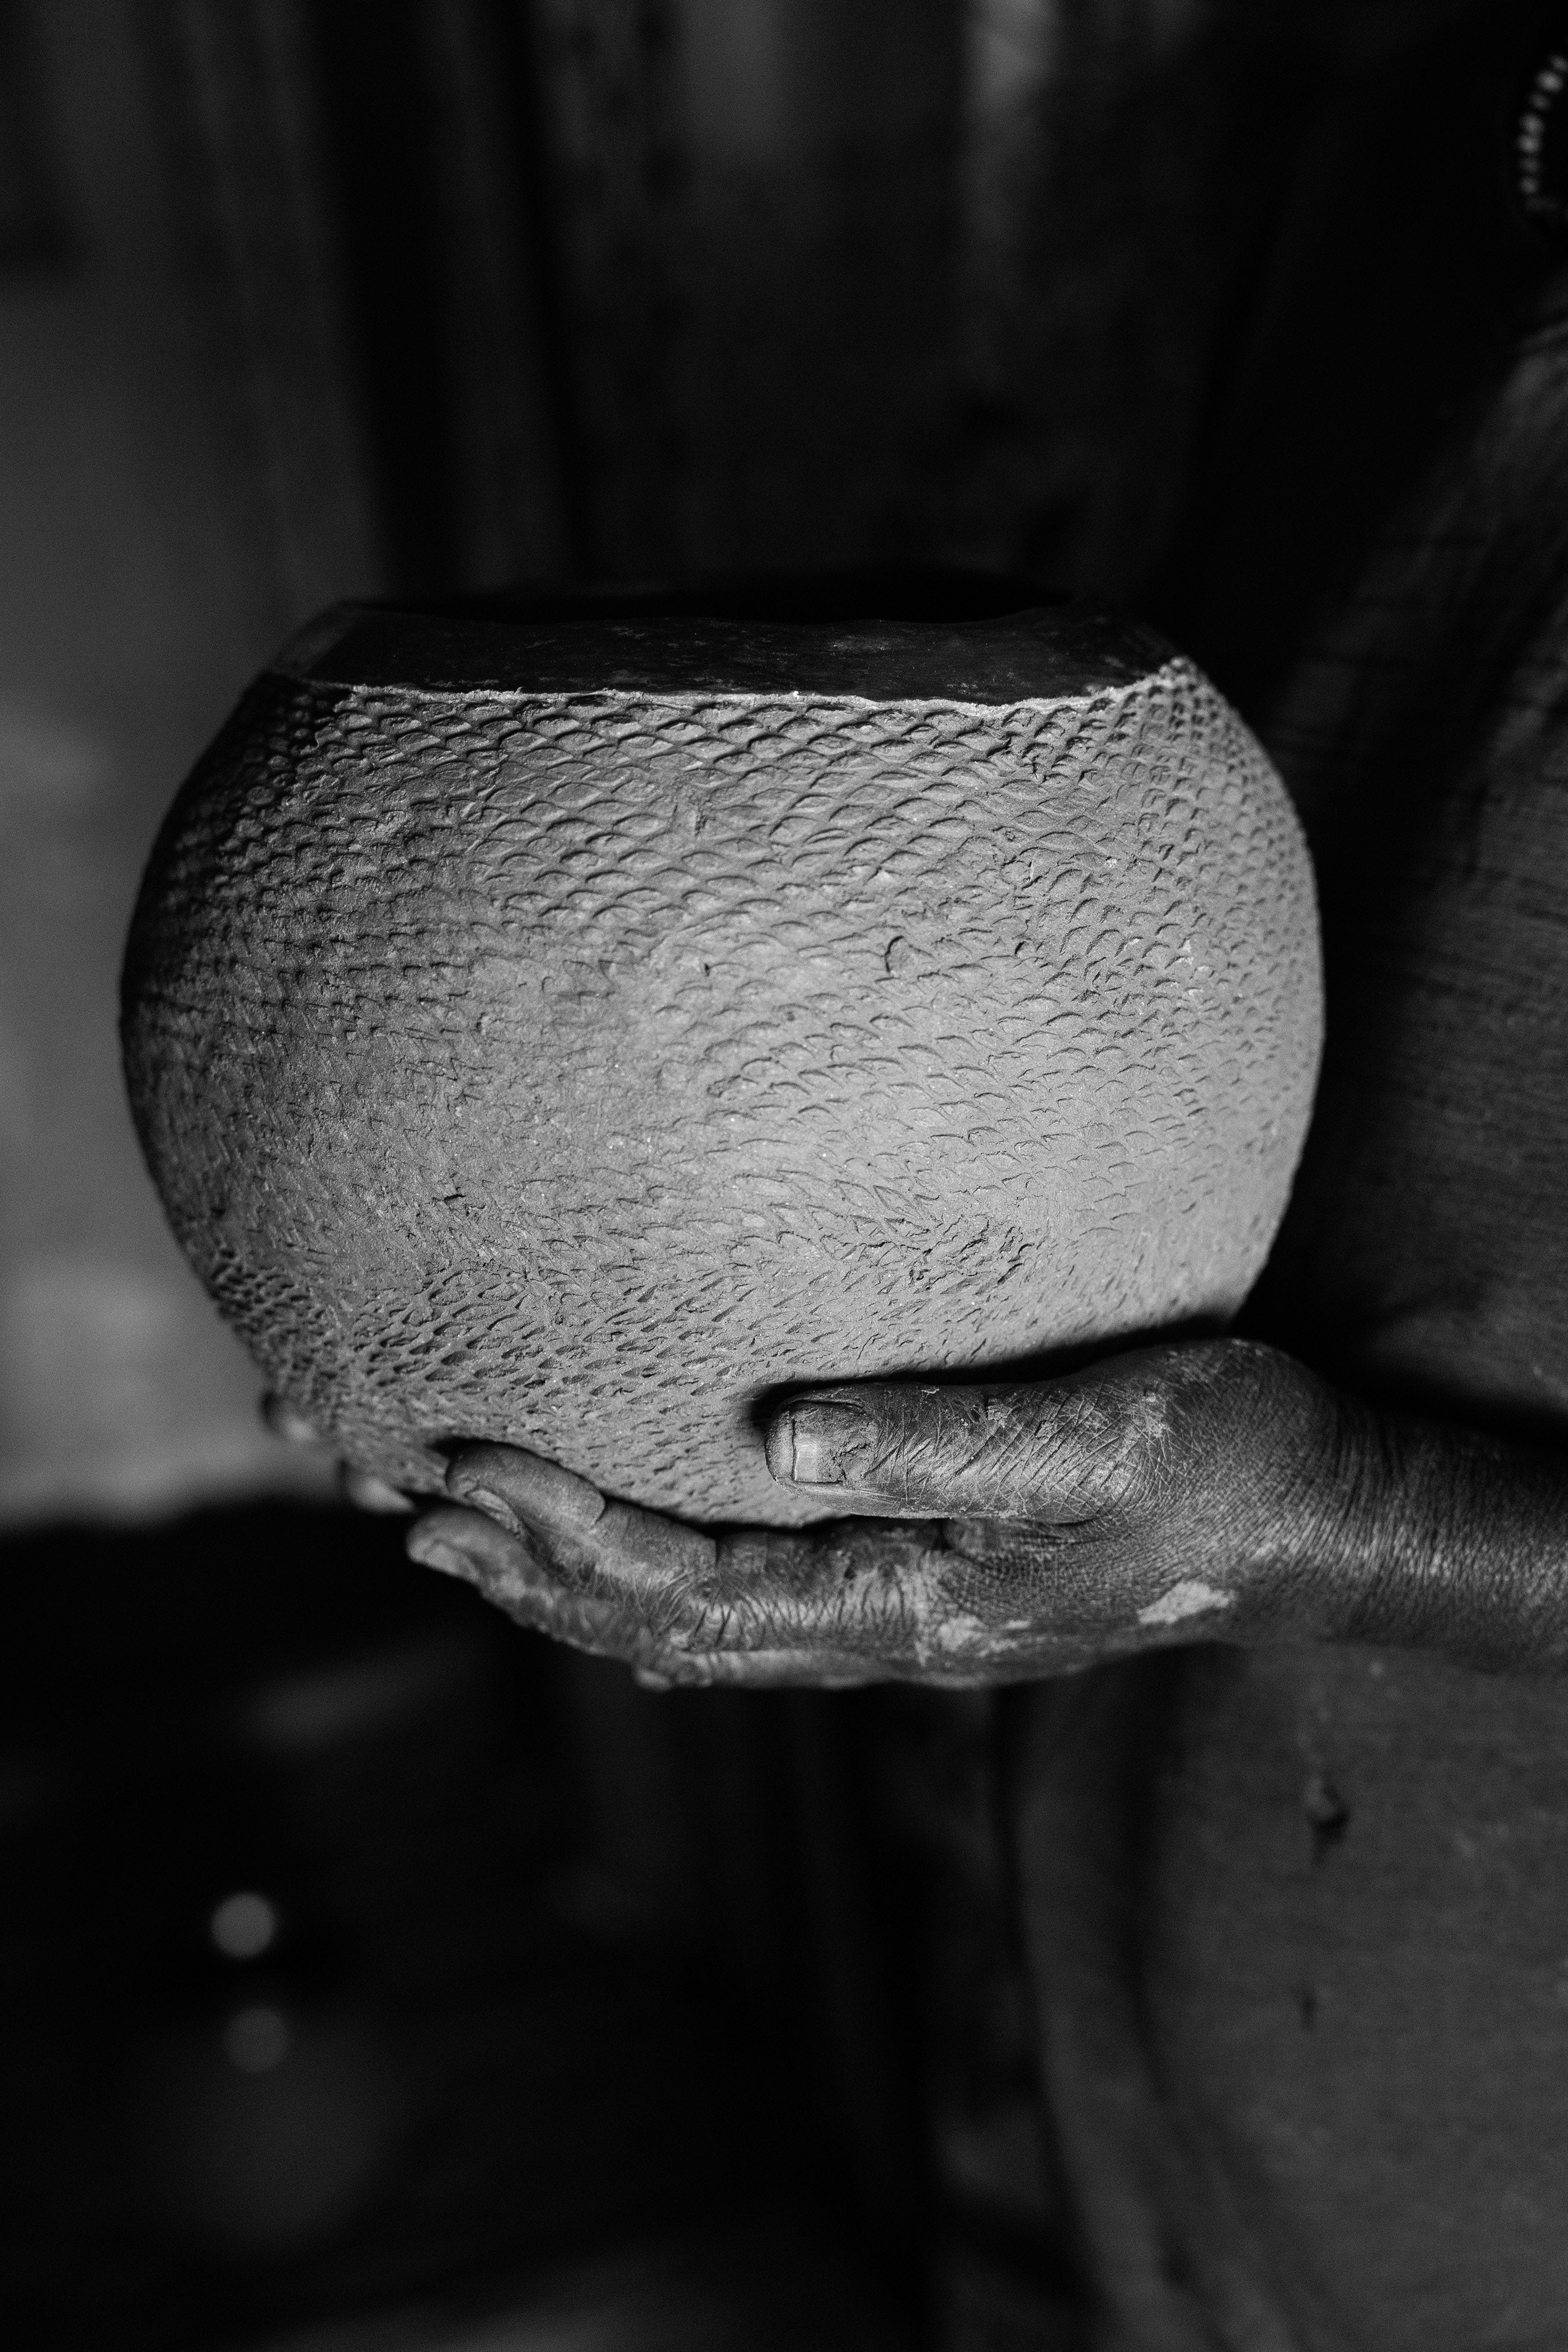 Potters of Uganda